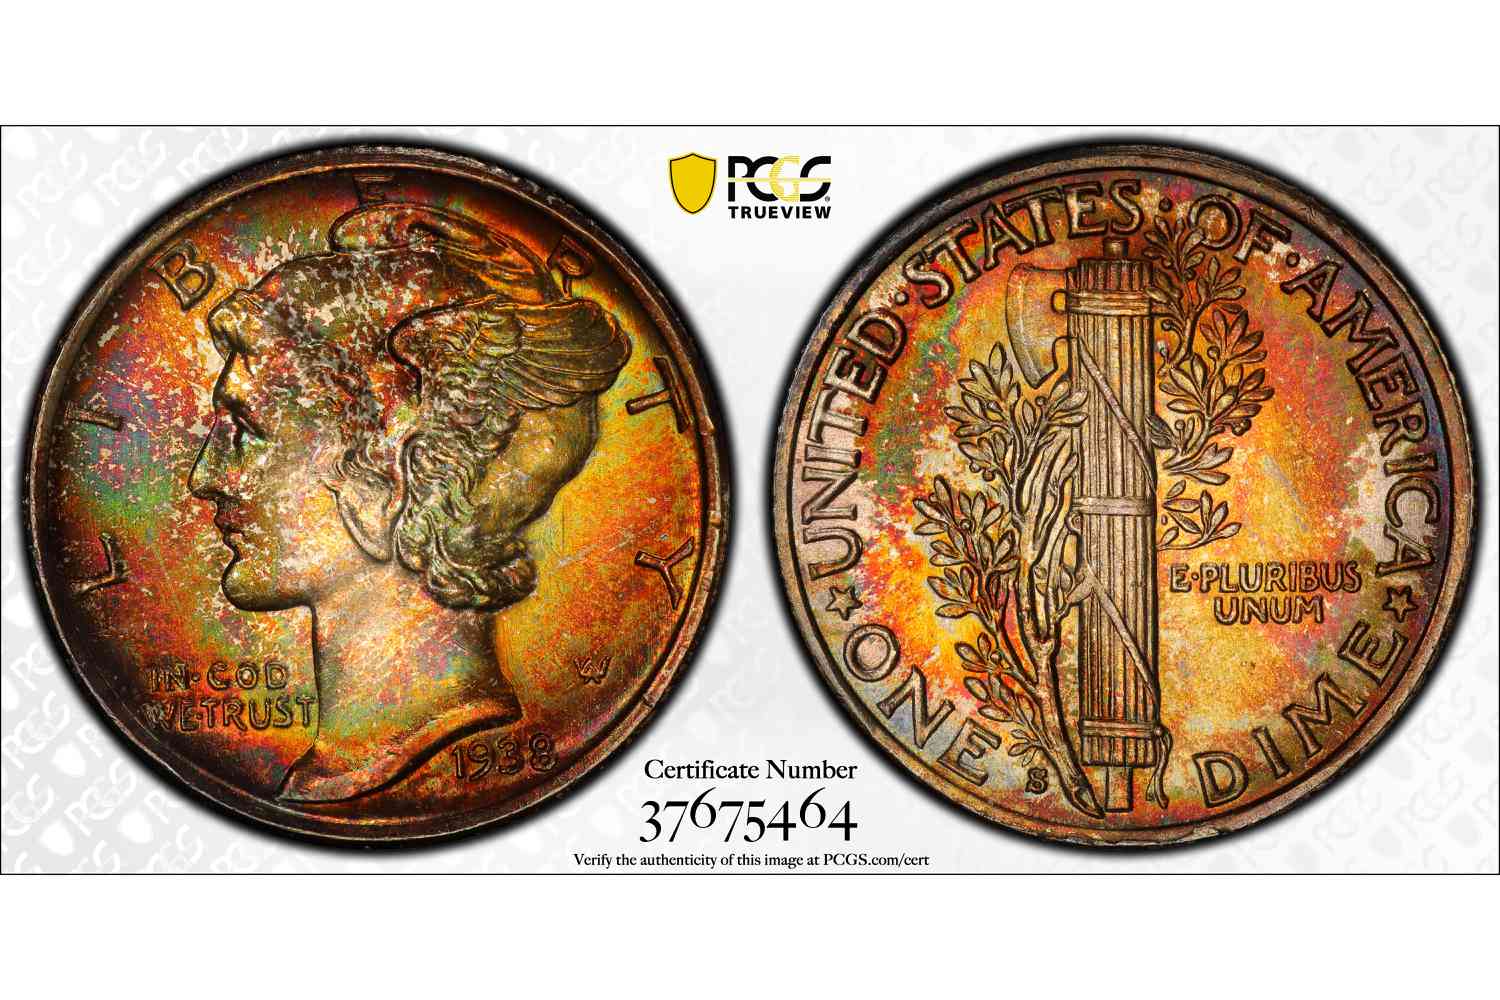 1938-S水星硬币被PCGS评为MS-68+